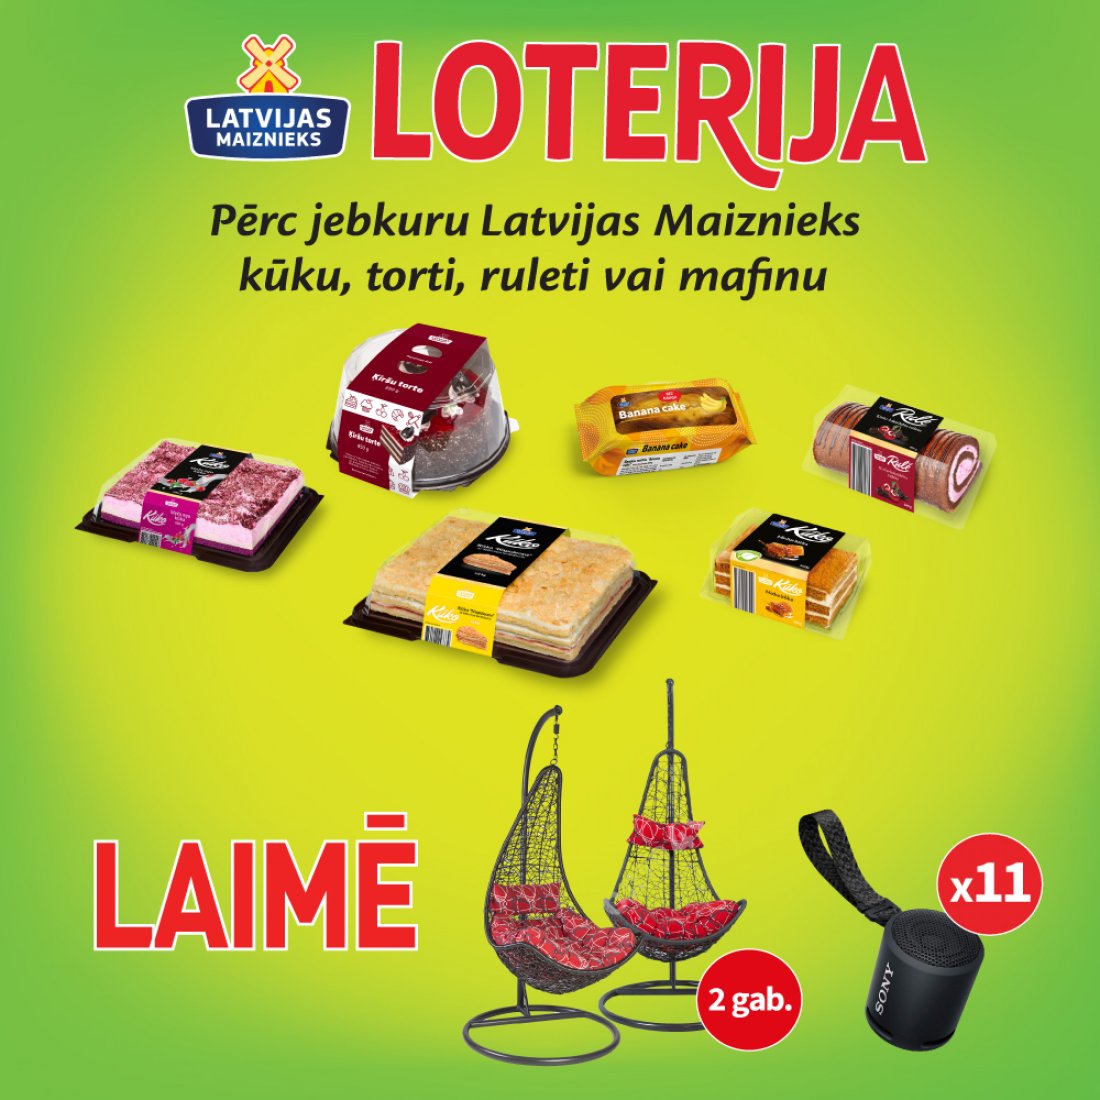 Лотерея в магазинах Rimi - кондитерские изделия от Latvijas Maiznieks